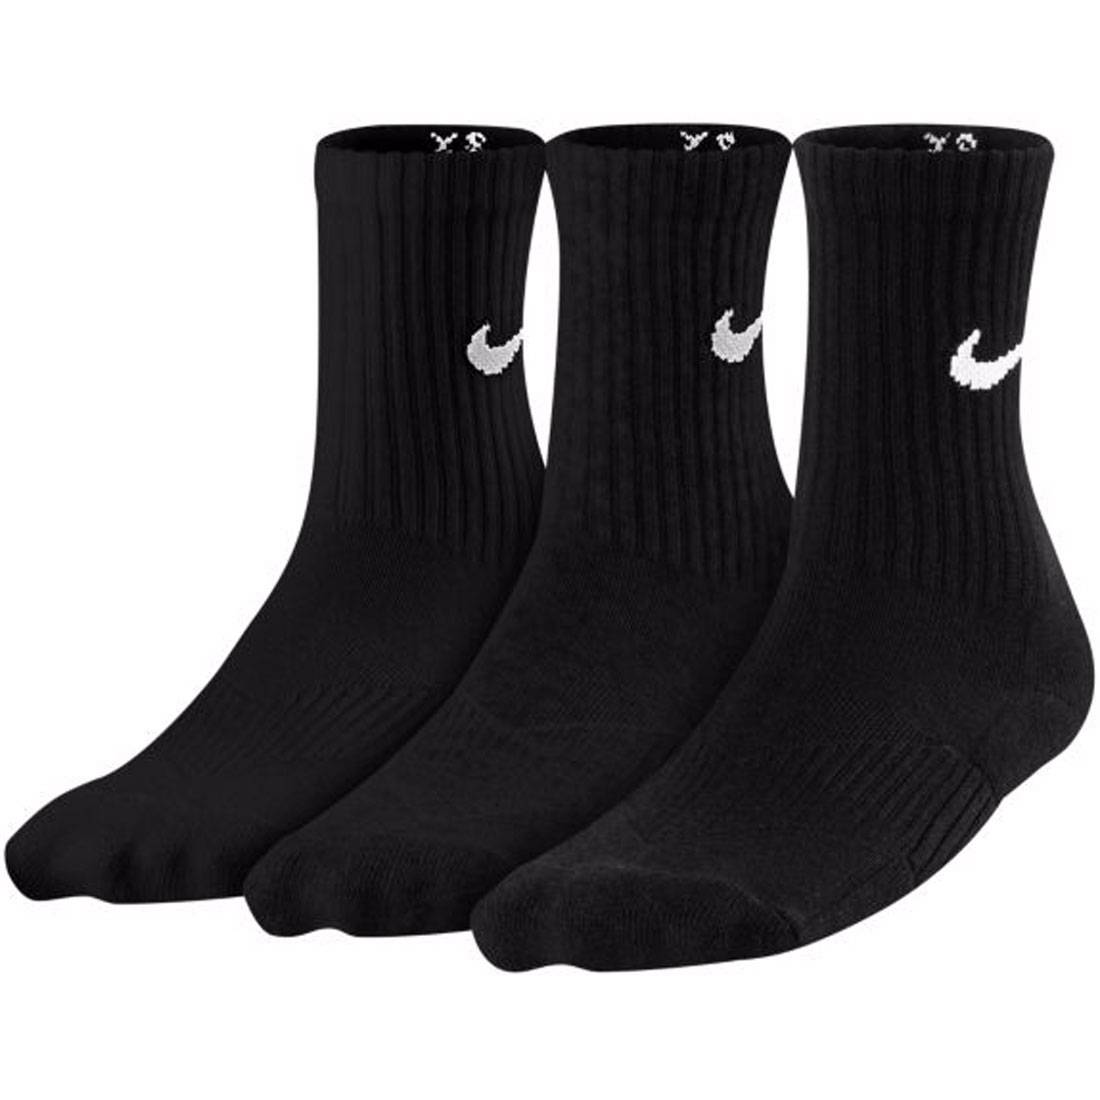 $14.00 SX4719-001 Nike Big Kids 3 Pack Youth Crew Socks (black) | eBay